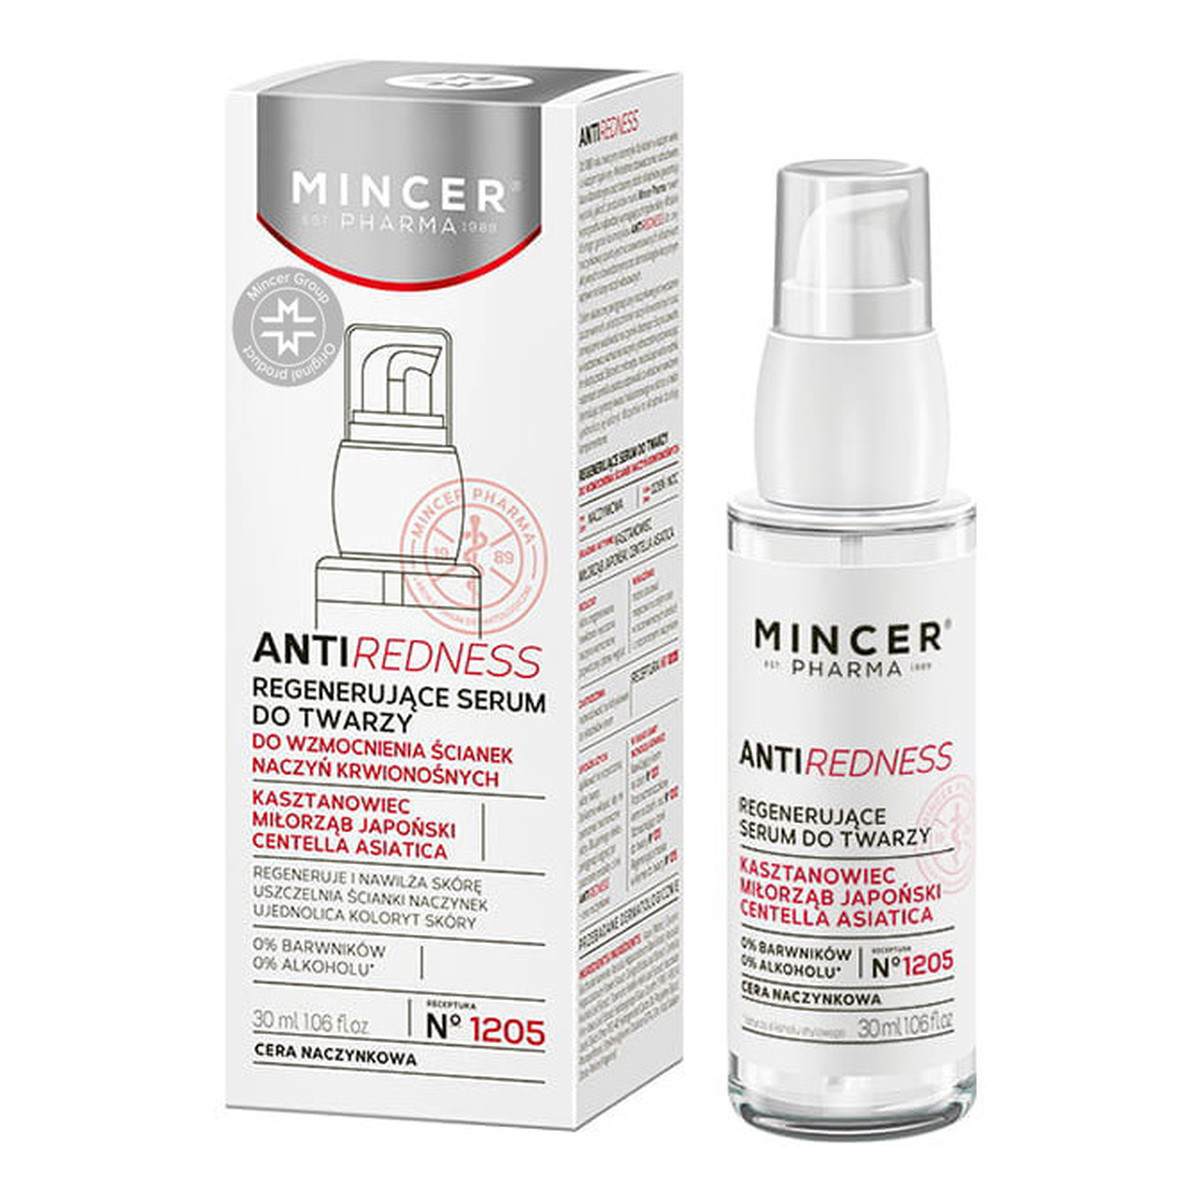 Mincer Pharma Anti Redness Regenerujące serum do twarzy 1205 30ml